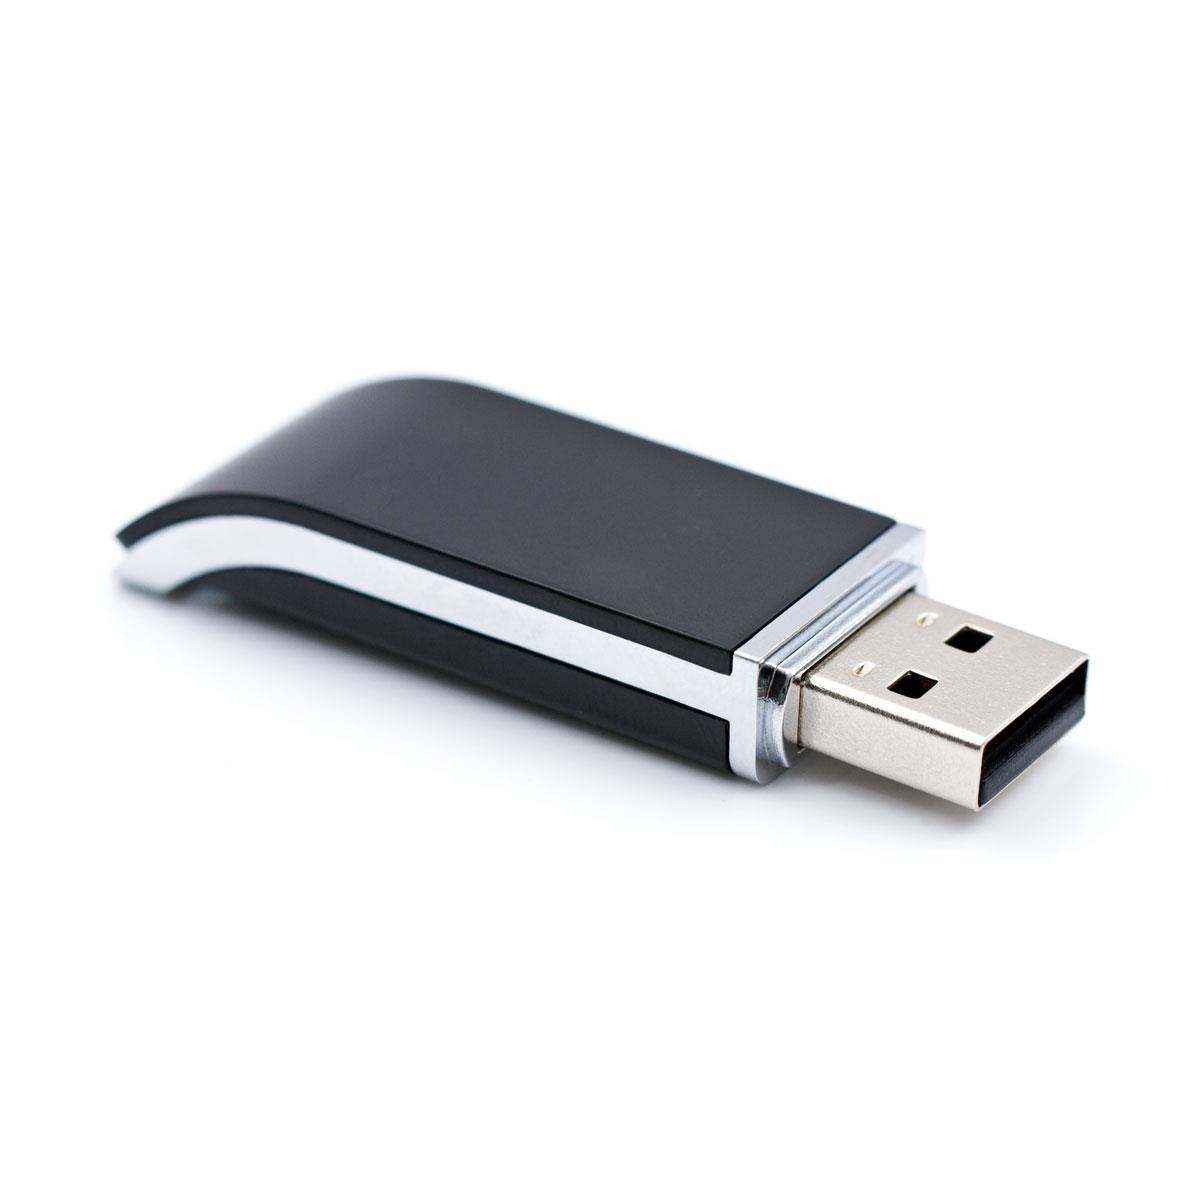 USB Stick Fashion 512 MB